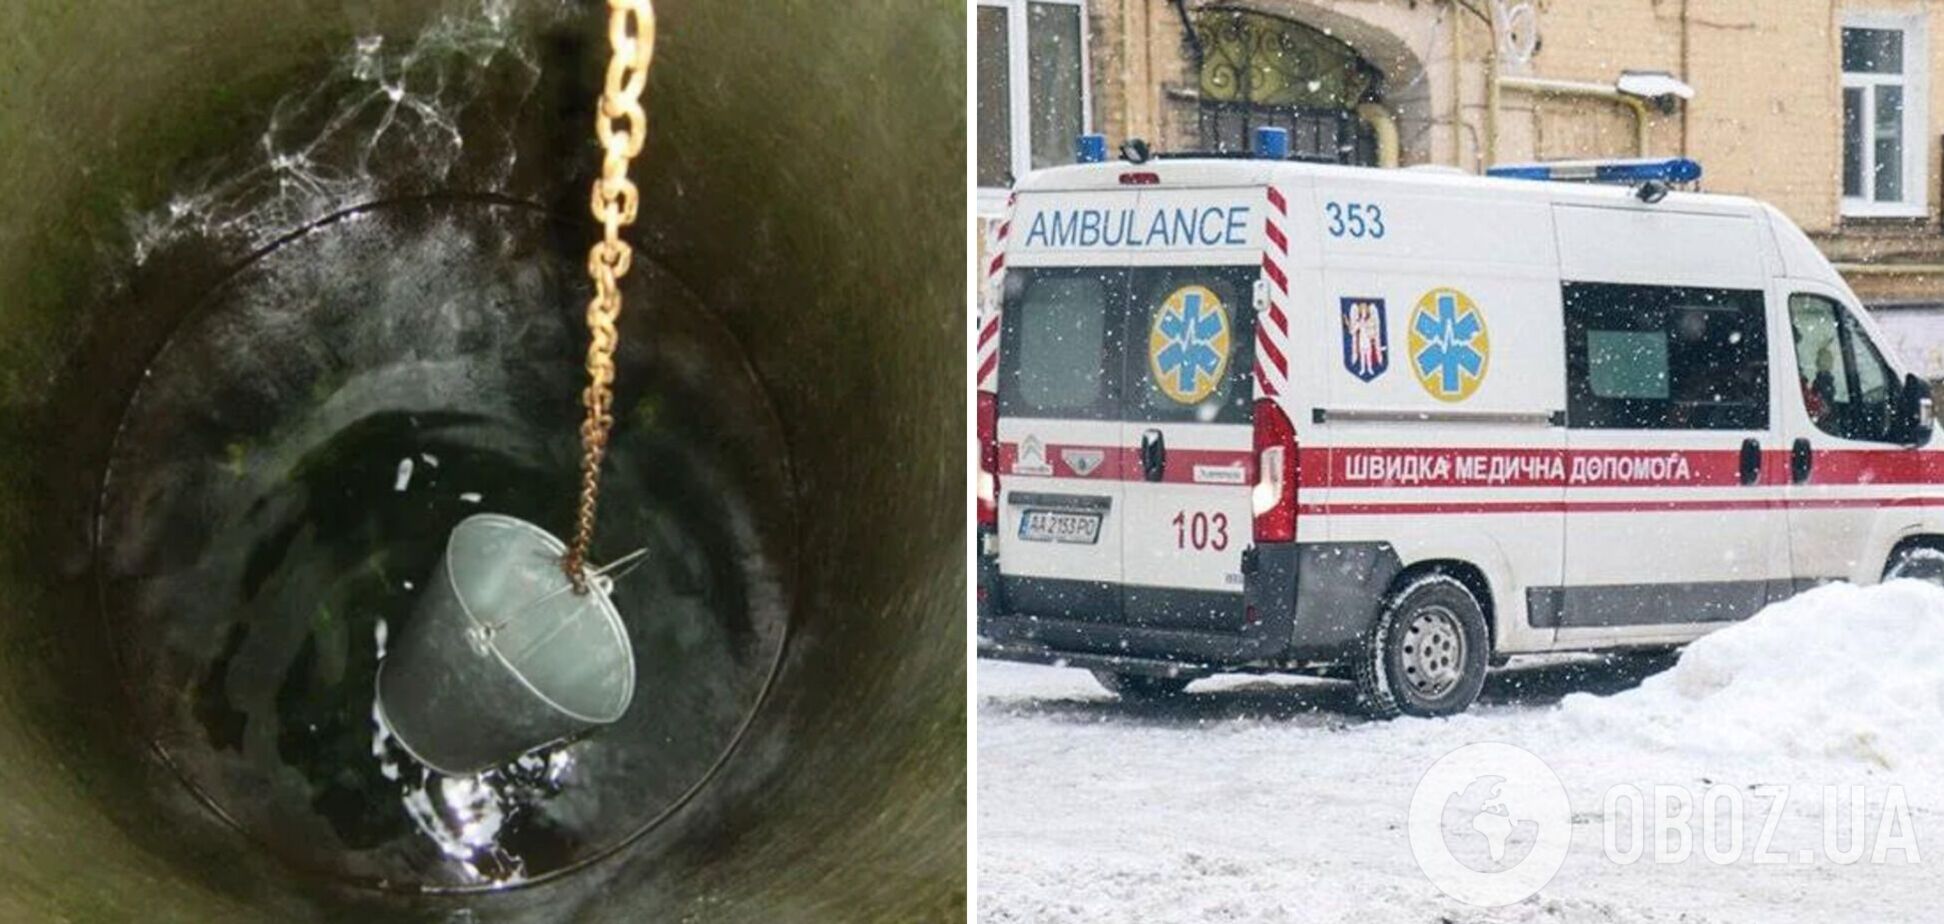 Хотел набрать воды: в Одесской области 12-летний мальчик упал в колодец и погиб